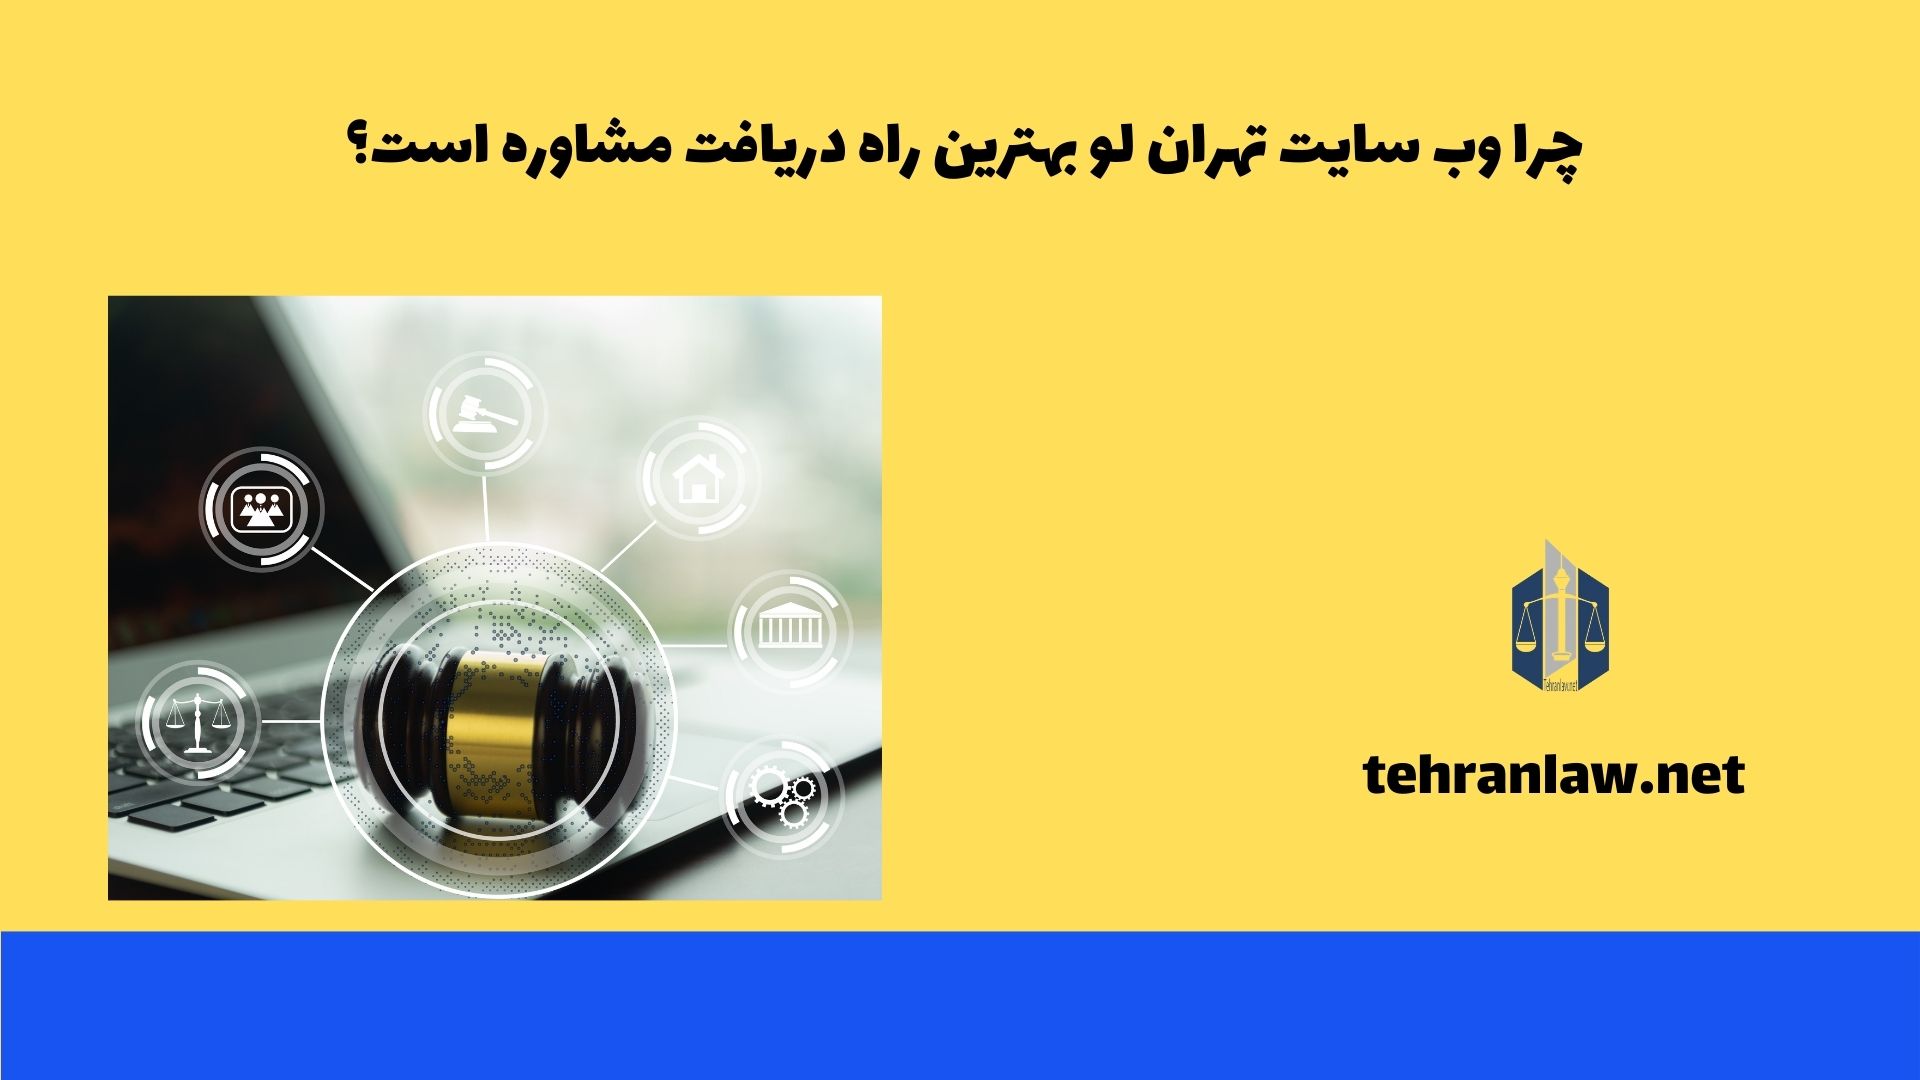 چرا وب سایت تهران لو بهترین راه دریافت مشاوره است؟